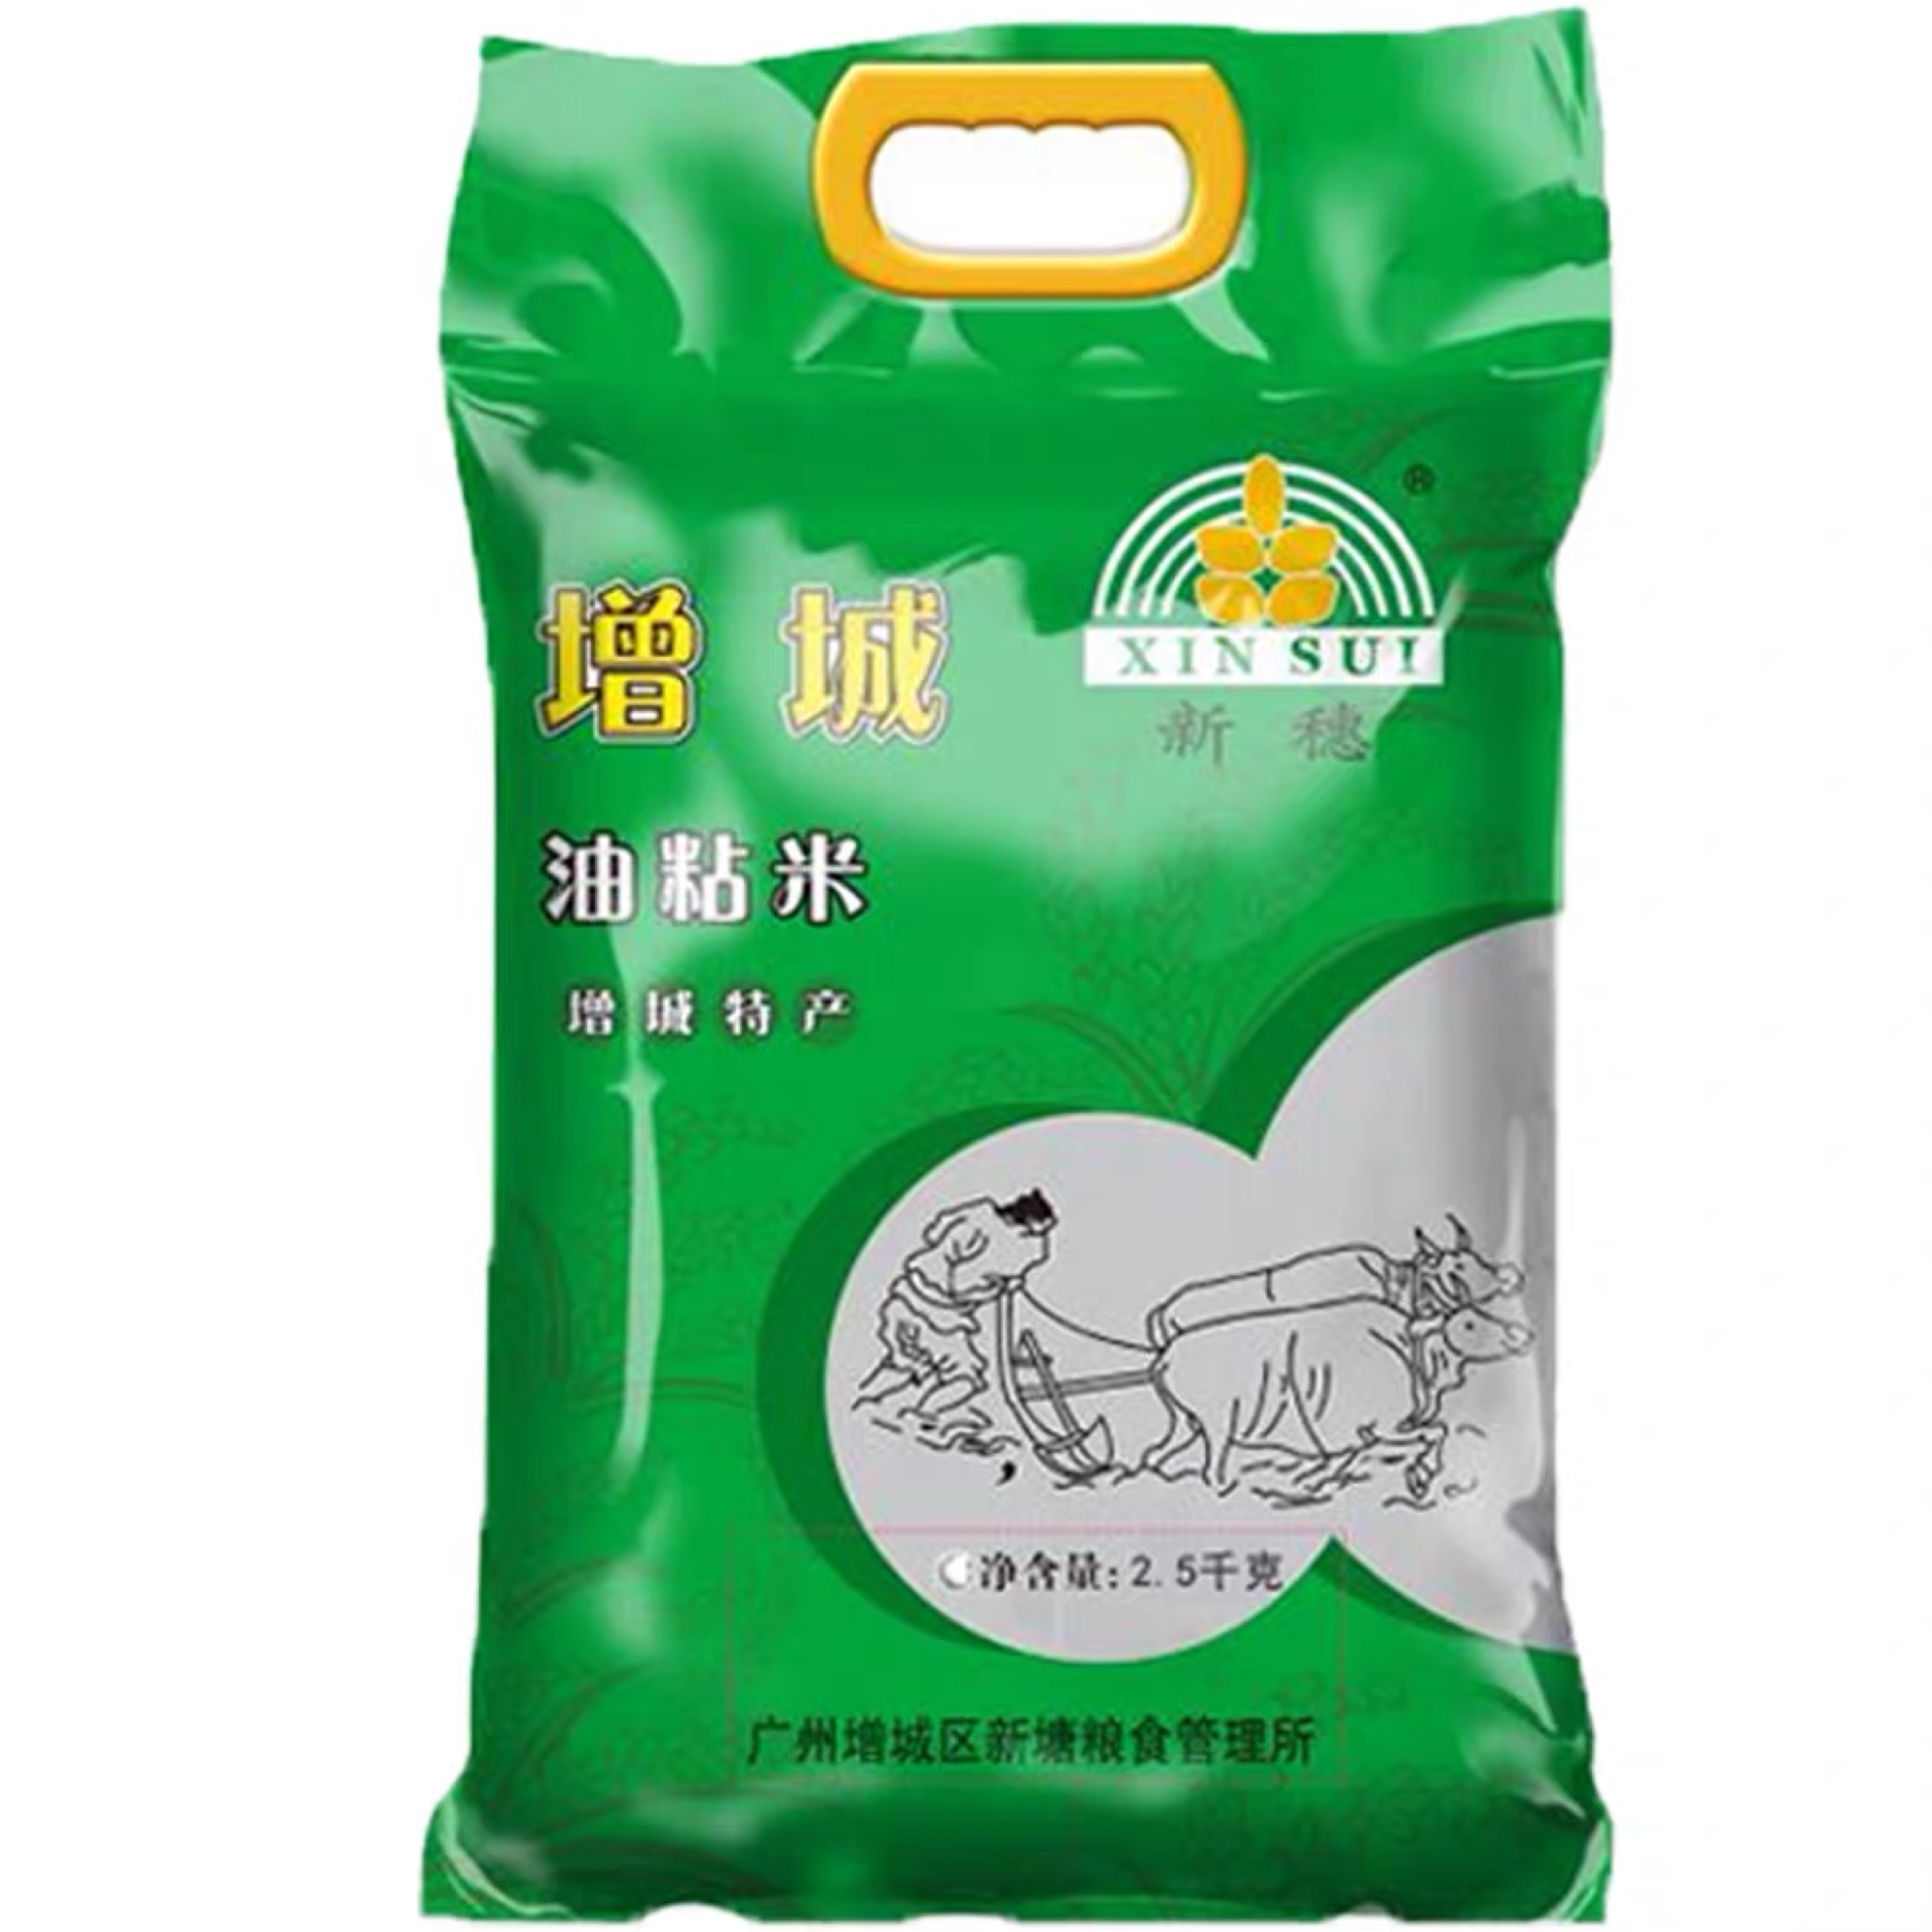 新穗增城油粘米2.5KG